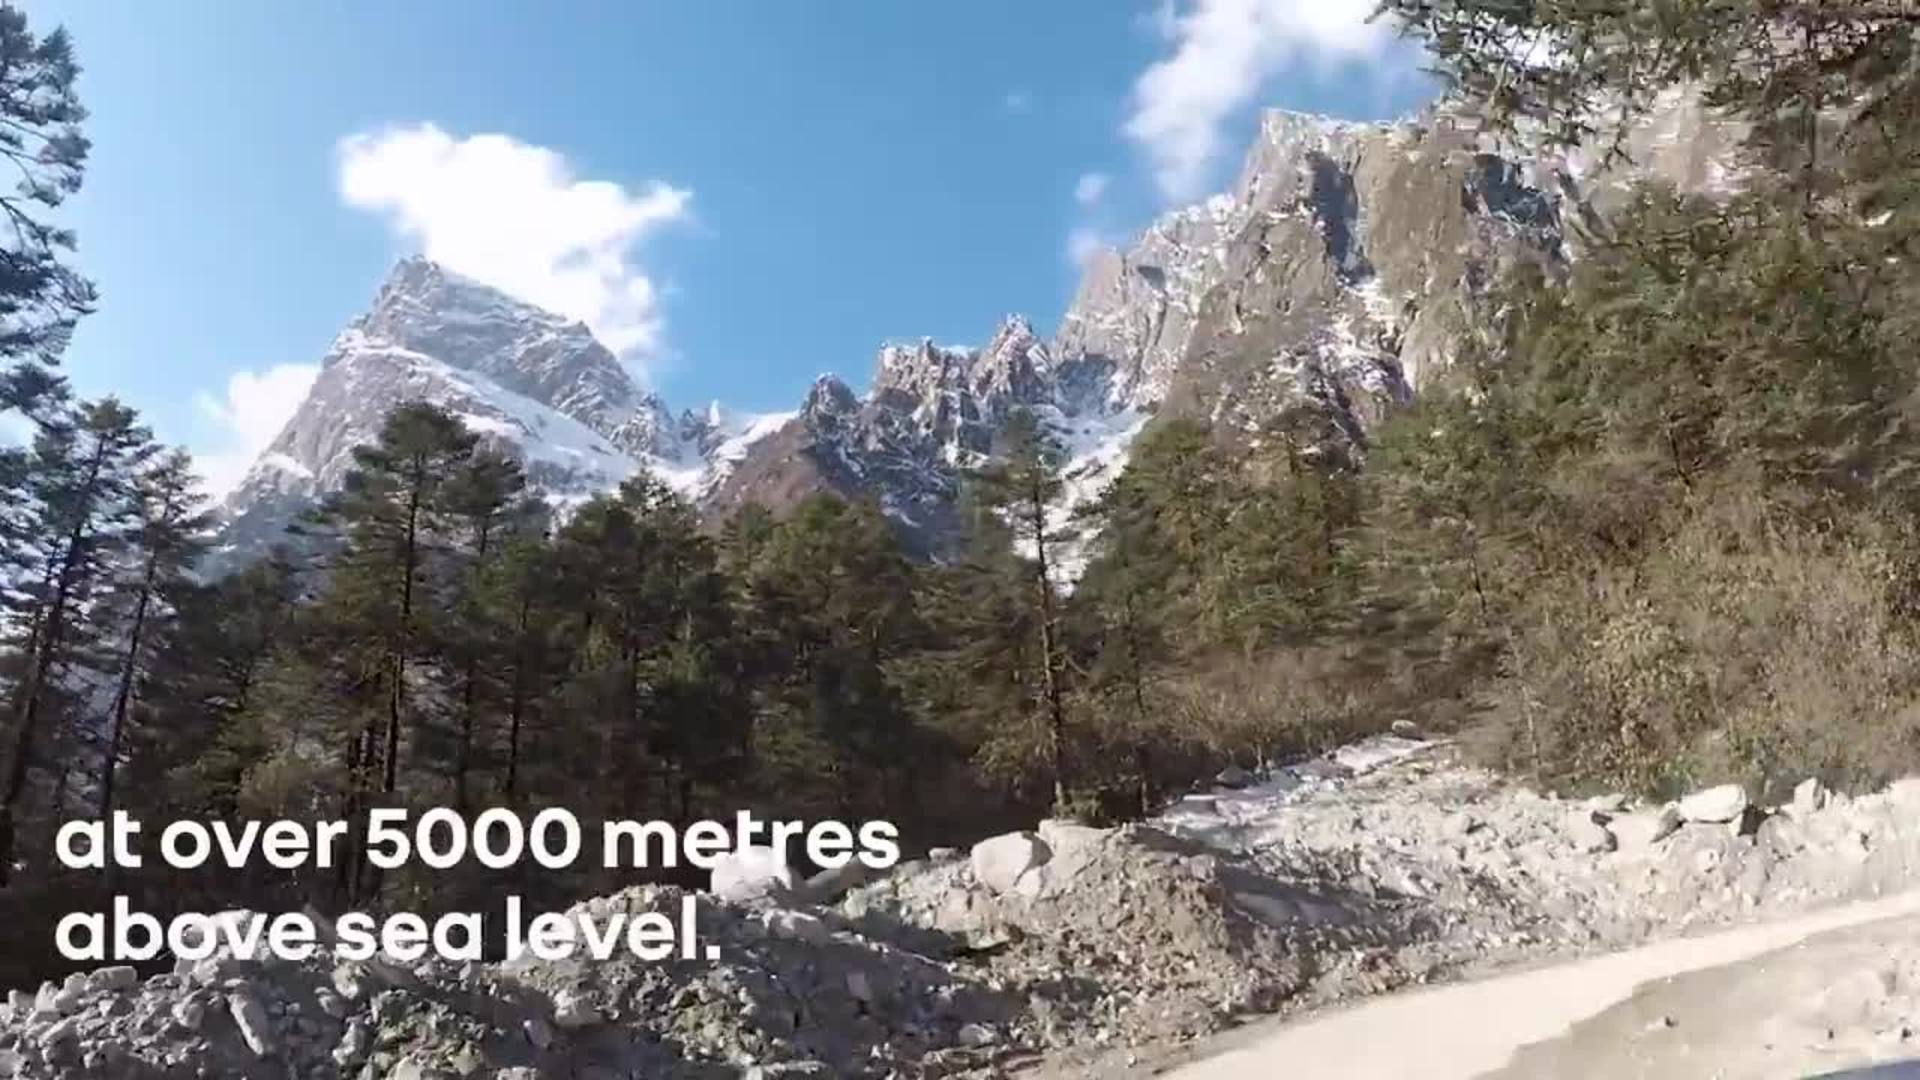 Kiger, el pequeño SUV indio de Renault capaz de escalar hasta el Himalaya